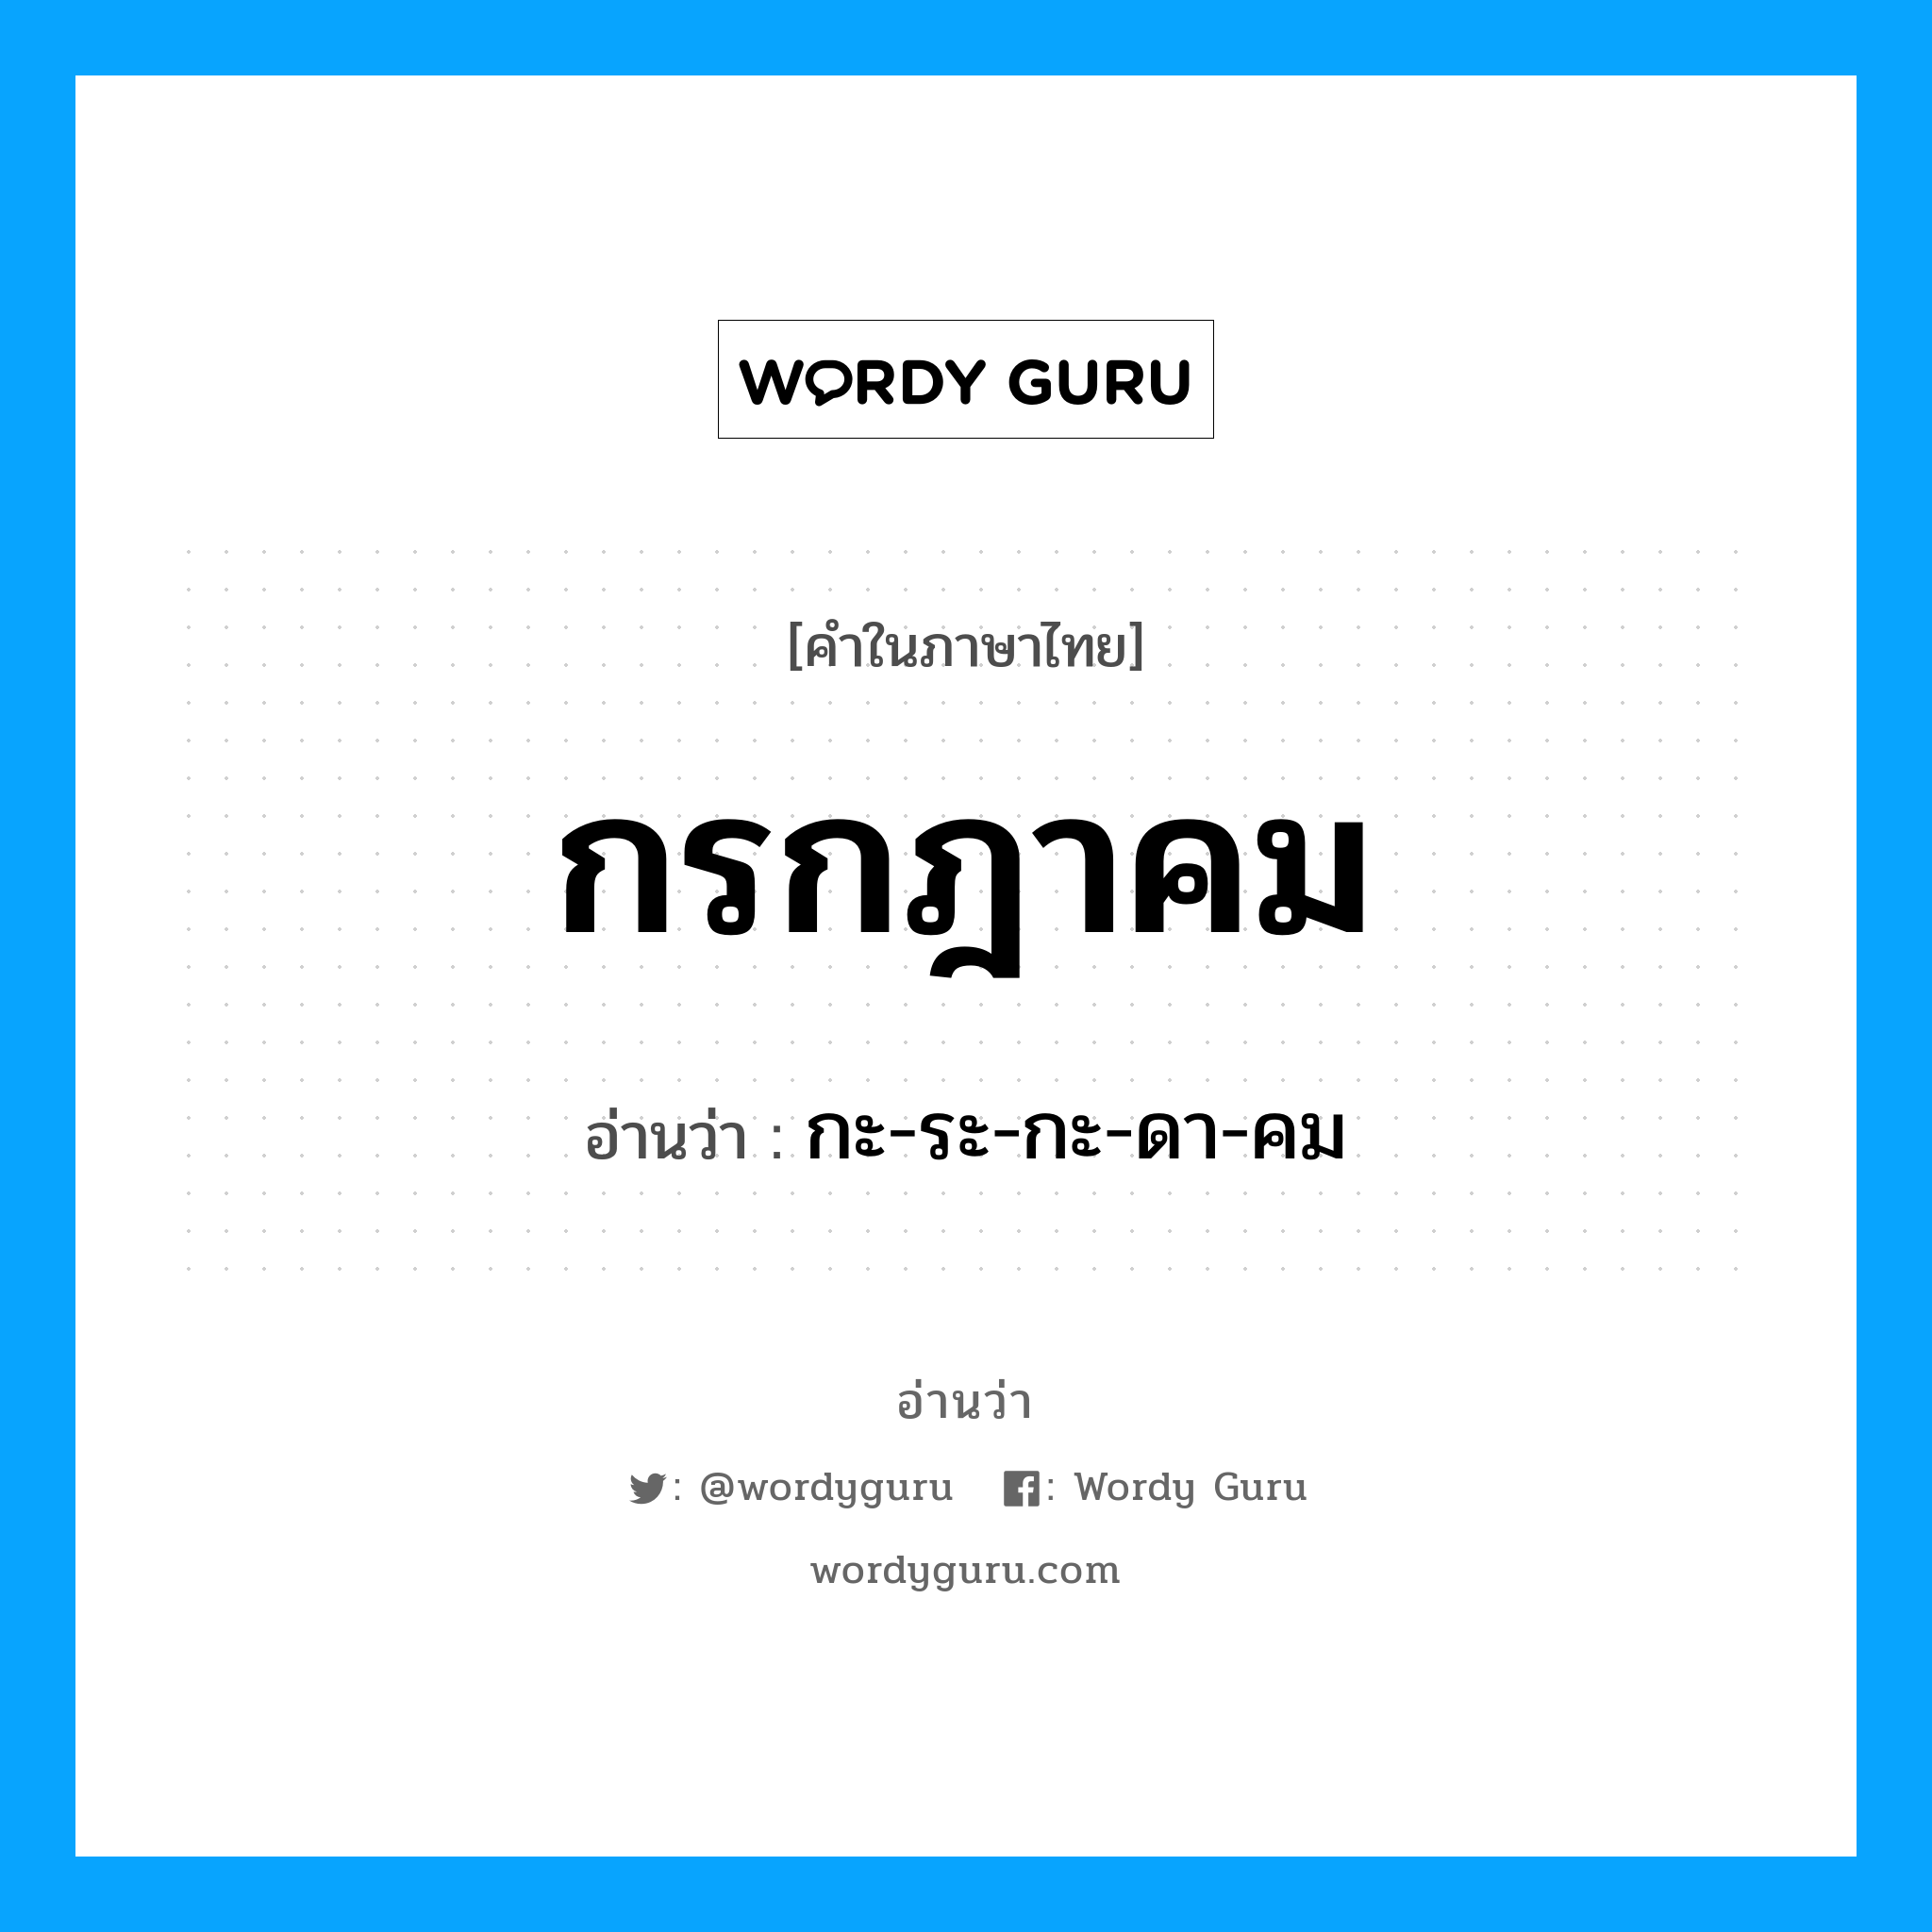 กะ-ระ-กะ-ดา-คม เป็นคำอ่านของคำไหน?, คำในภาษาไทย กะ-ระ-กะ-ดา-คม อ่านว่า กรกฎาคม หมวด เดือน หมวด เดือน